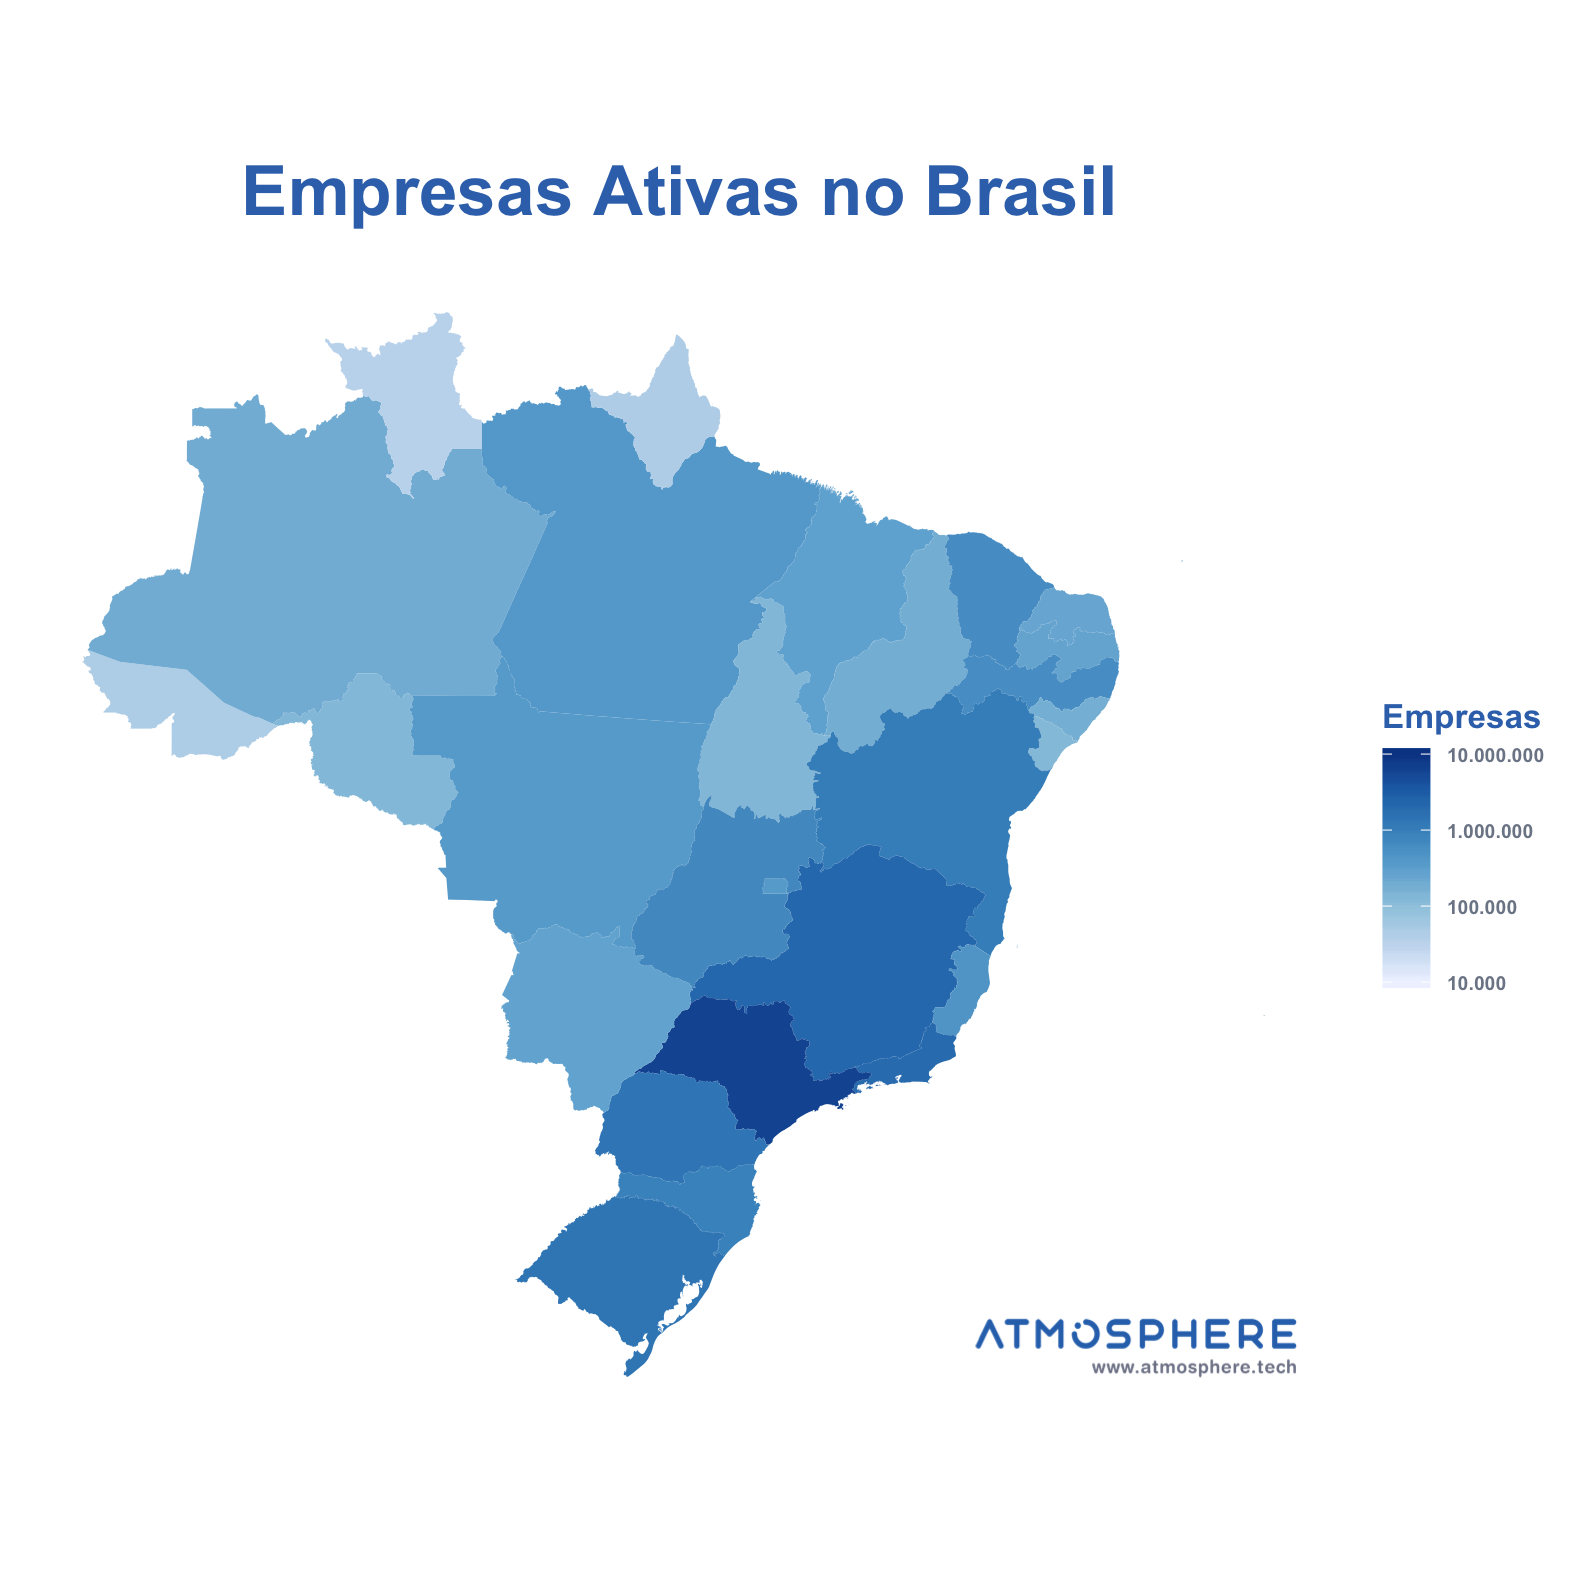 Atmosphere Empresas Ativas por Estado no Brasil